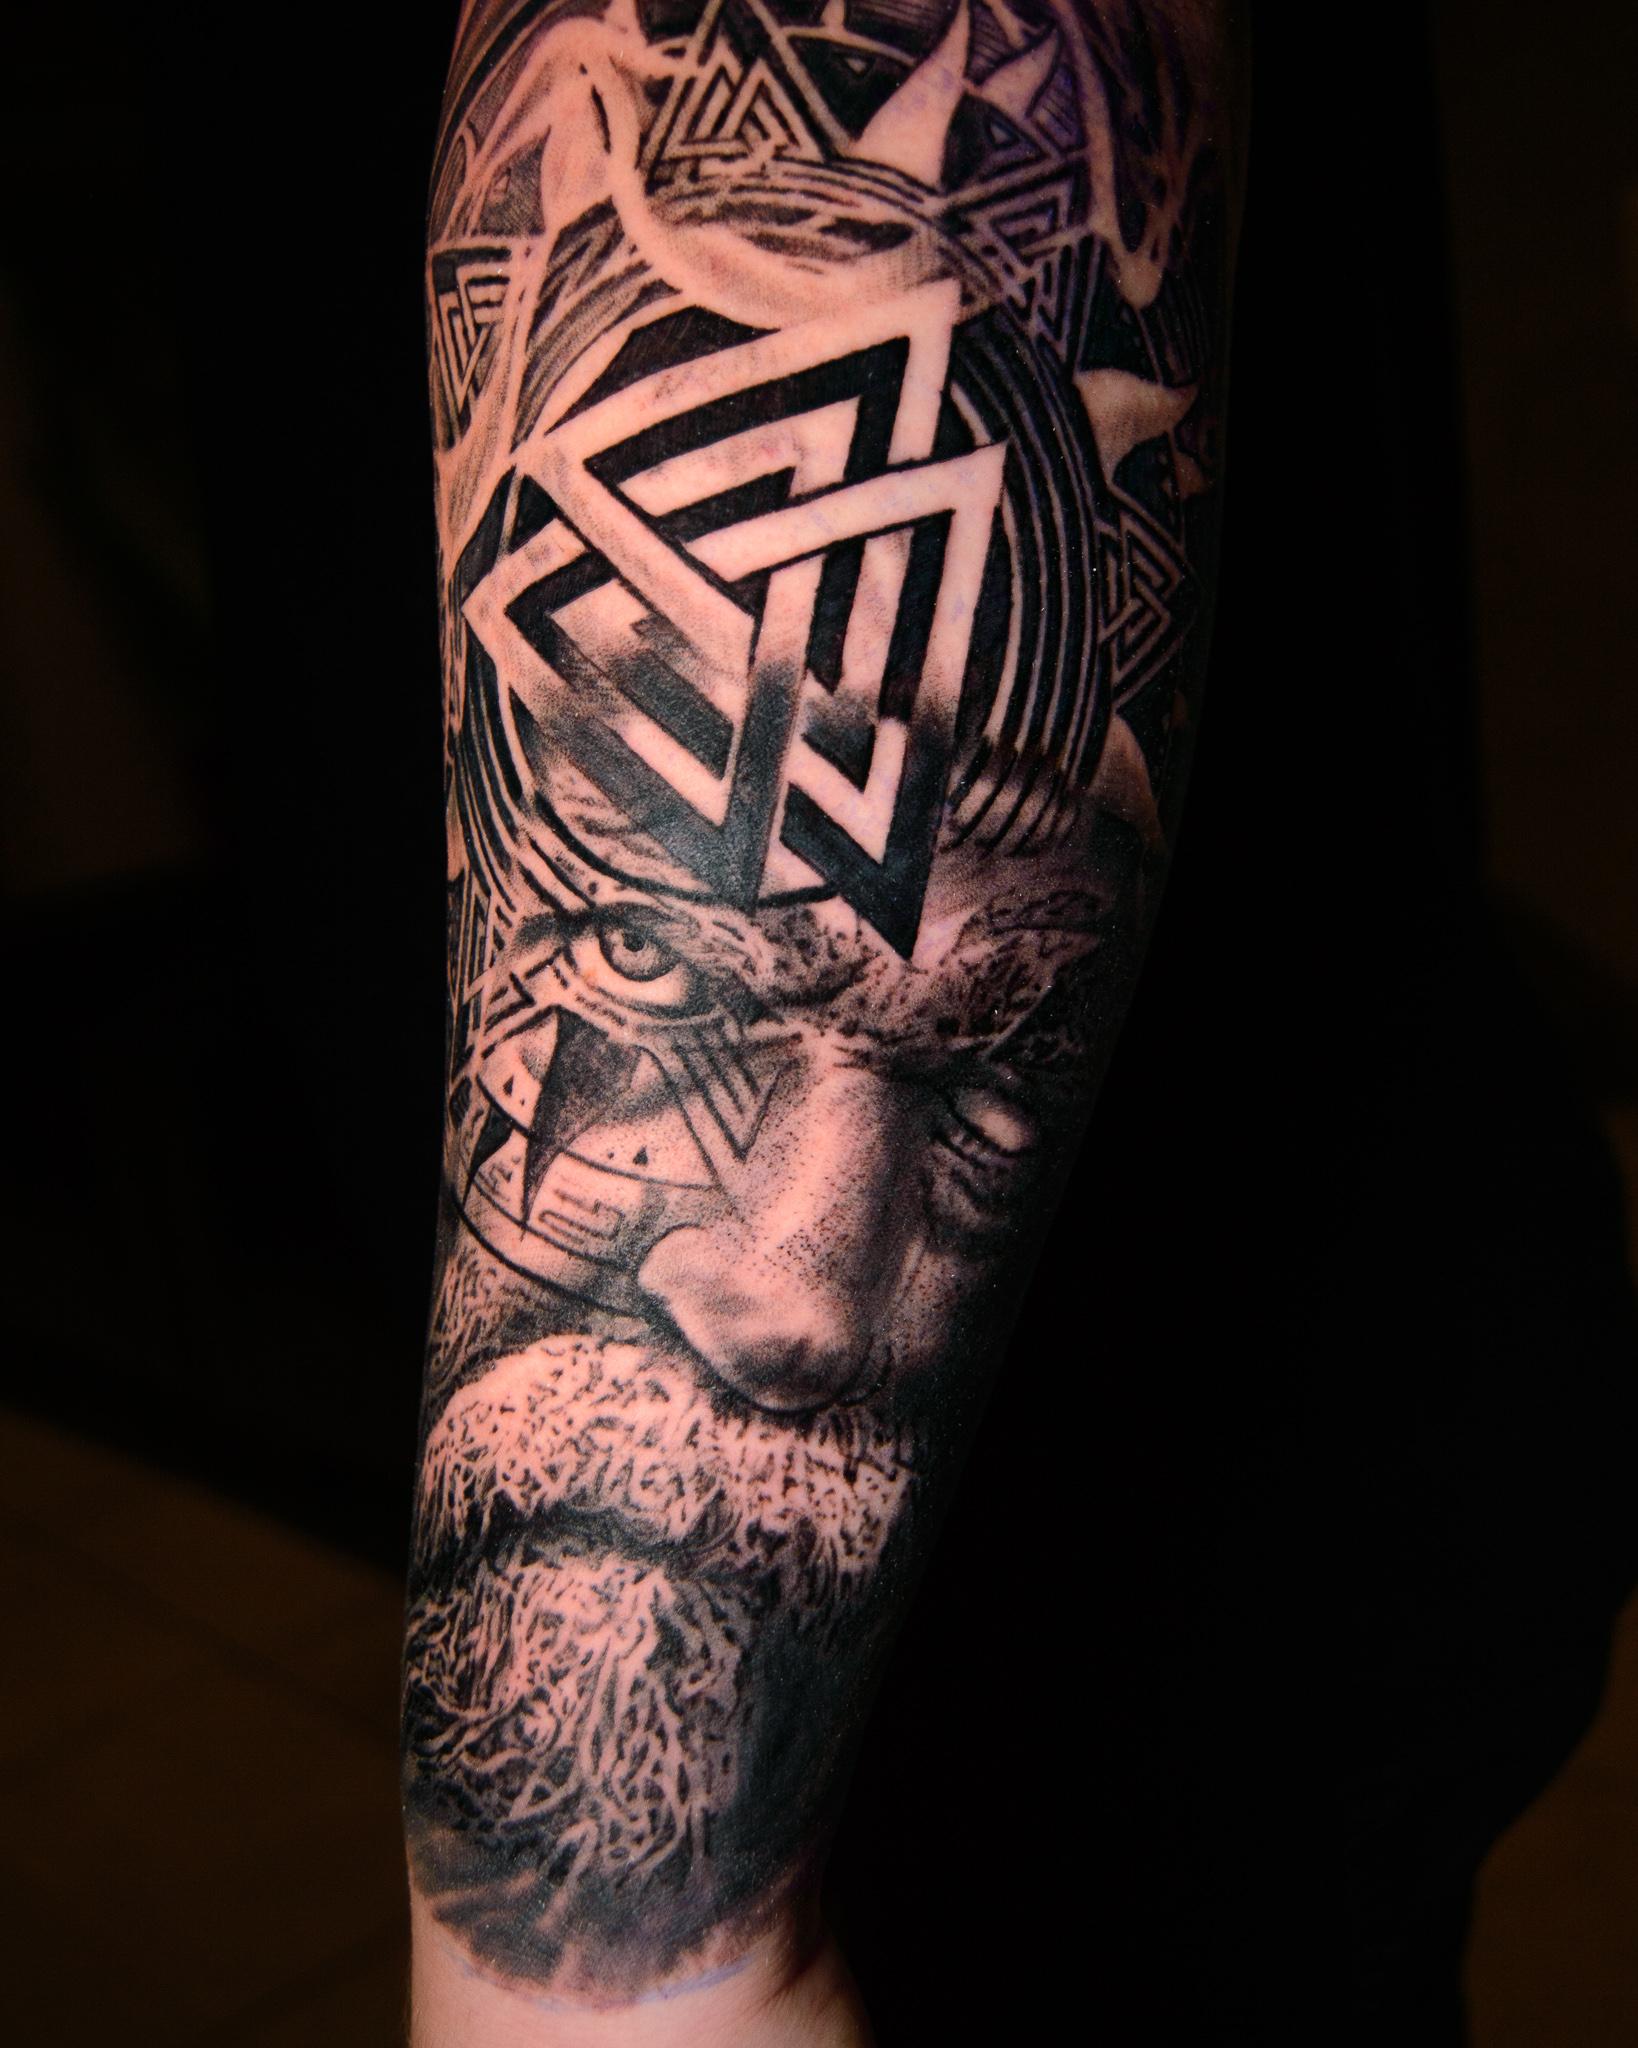 Inksearch tattoo Kamil Zieliński - Thanks.Leo